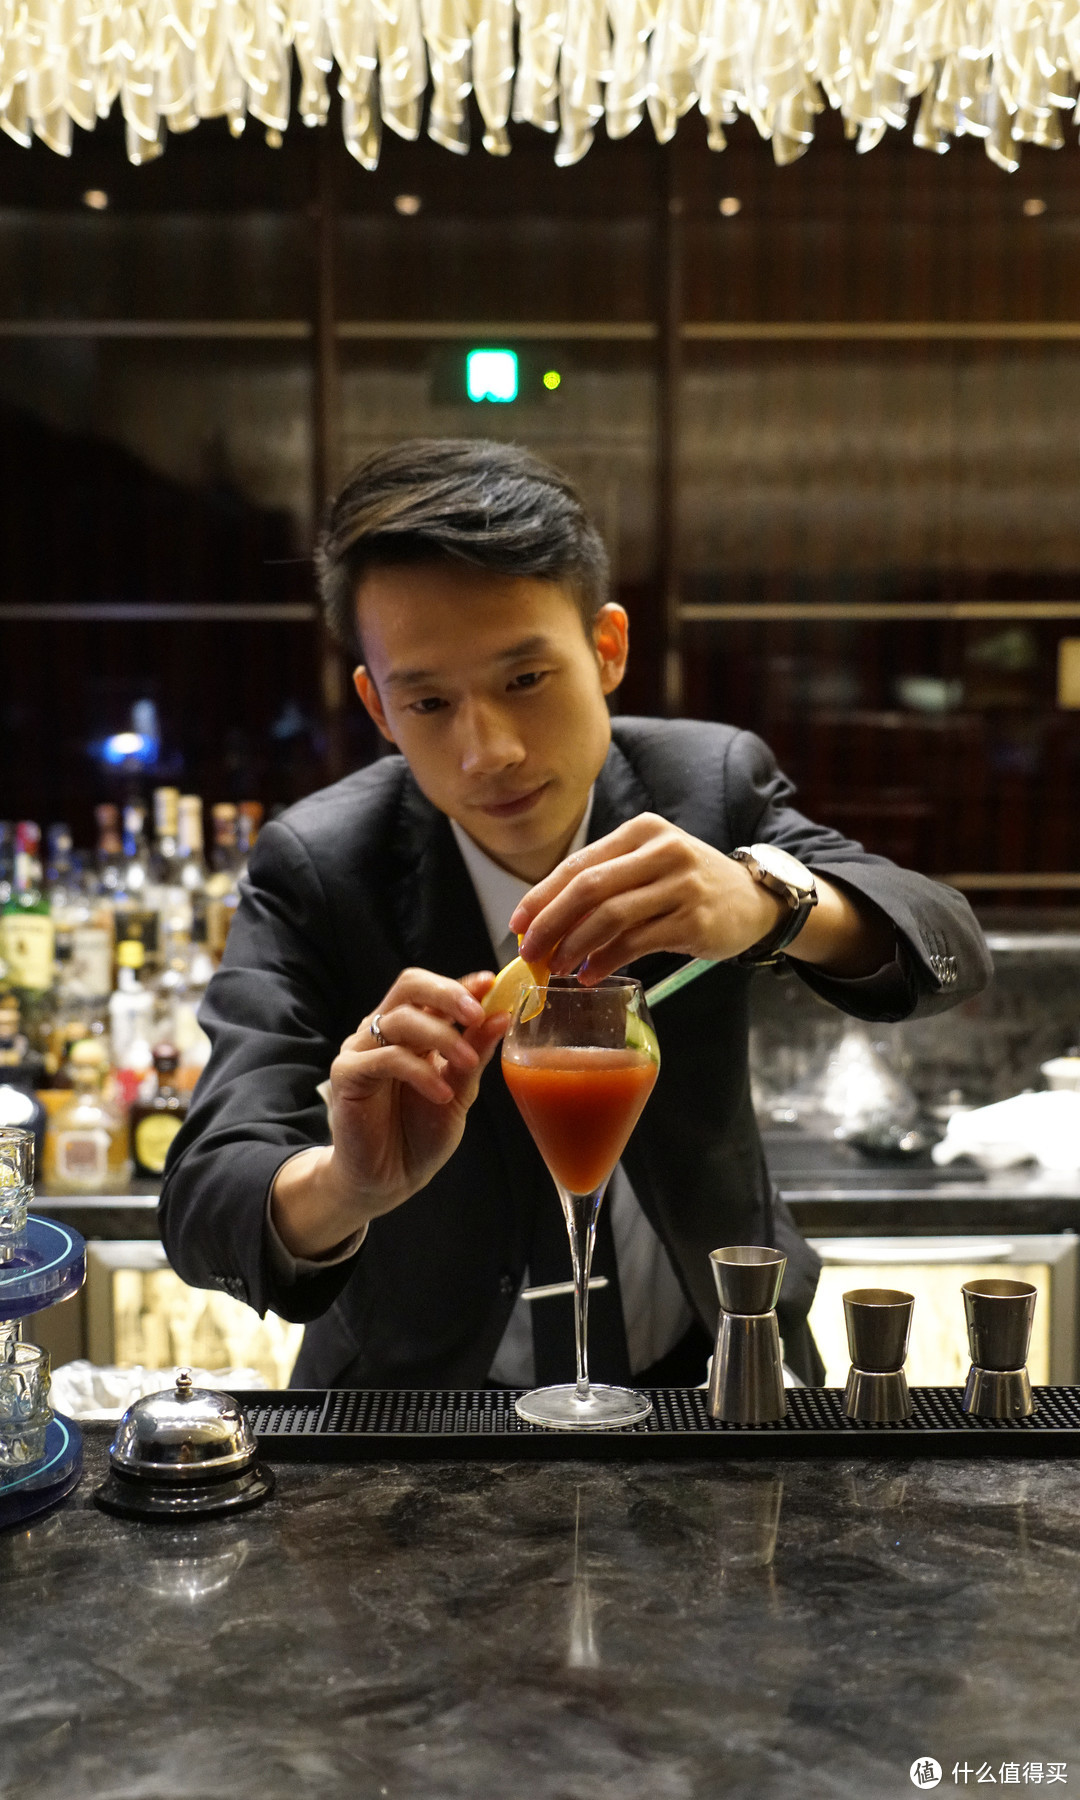 星城一夜，温润如酒 ~ 令人难忘的旅行故事：长沙瑞吉酒店 管家服务&瑞吉吧 体验